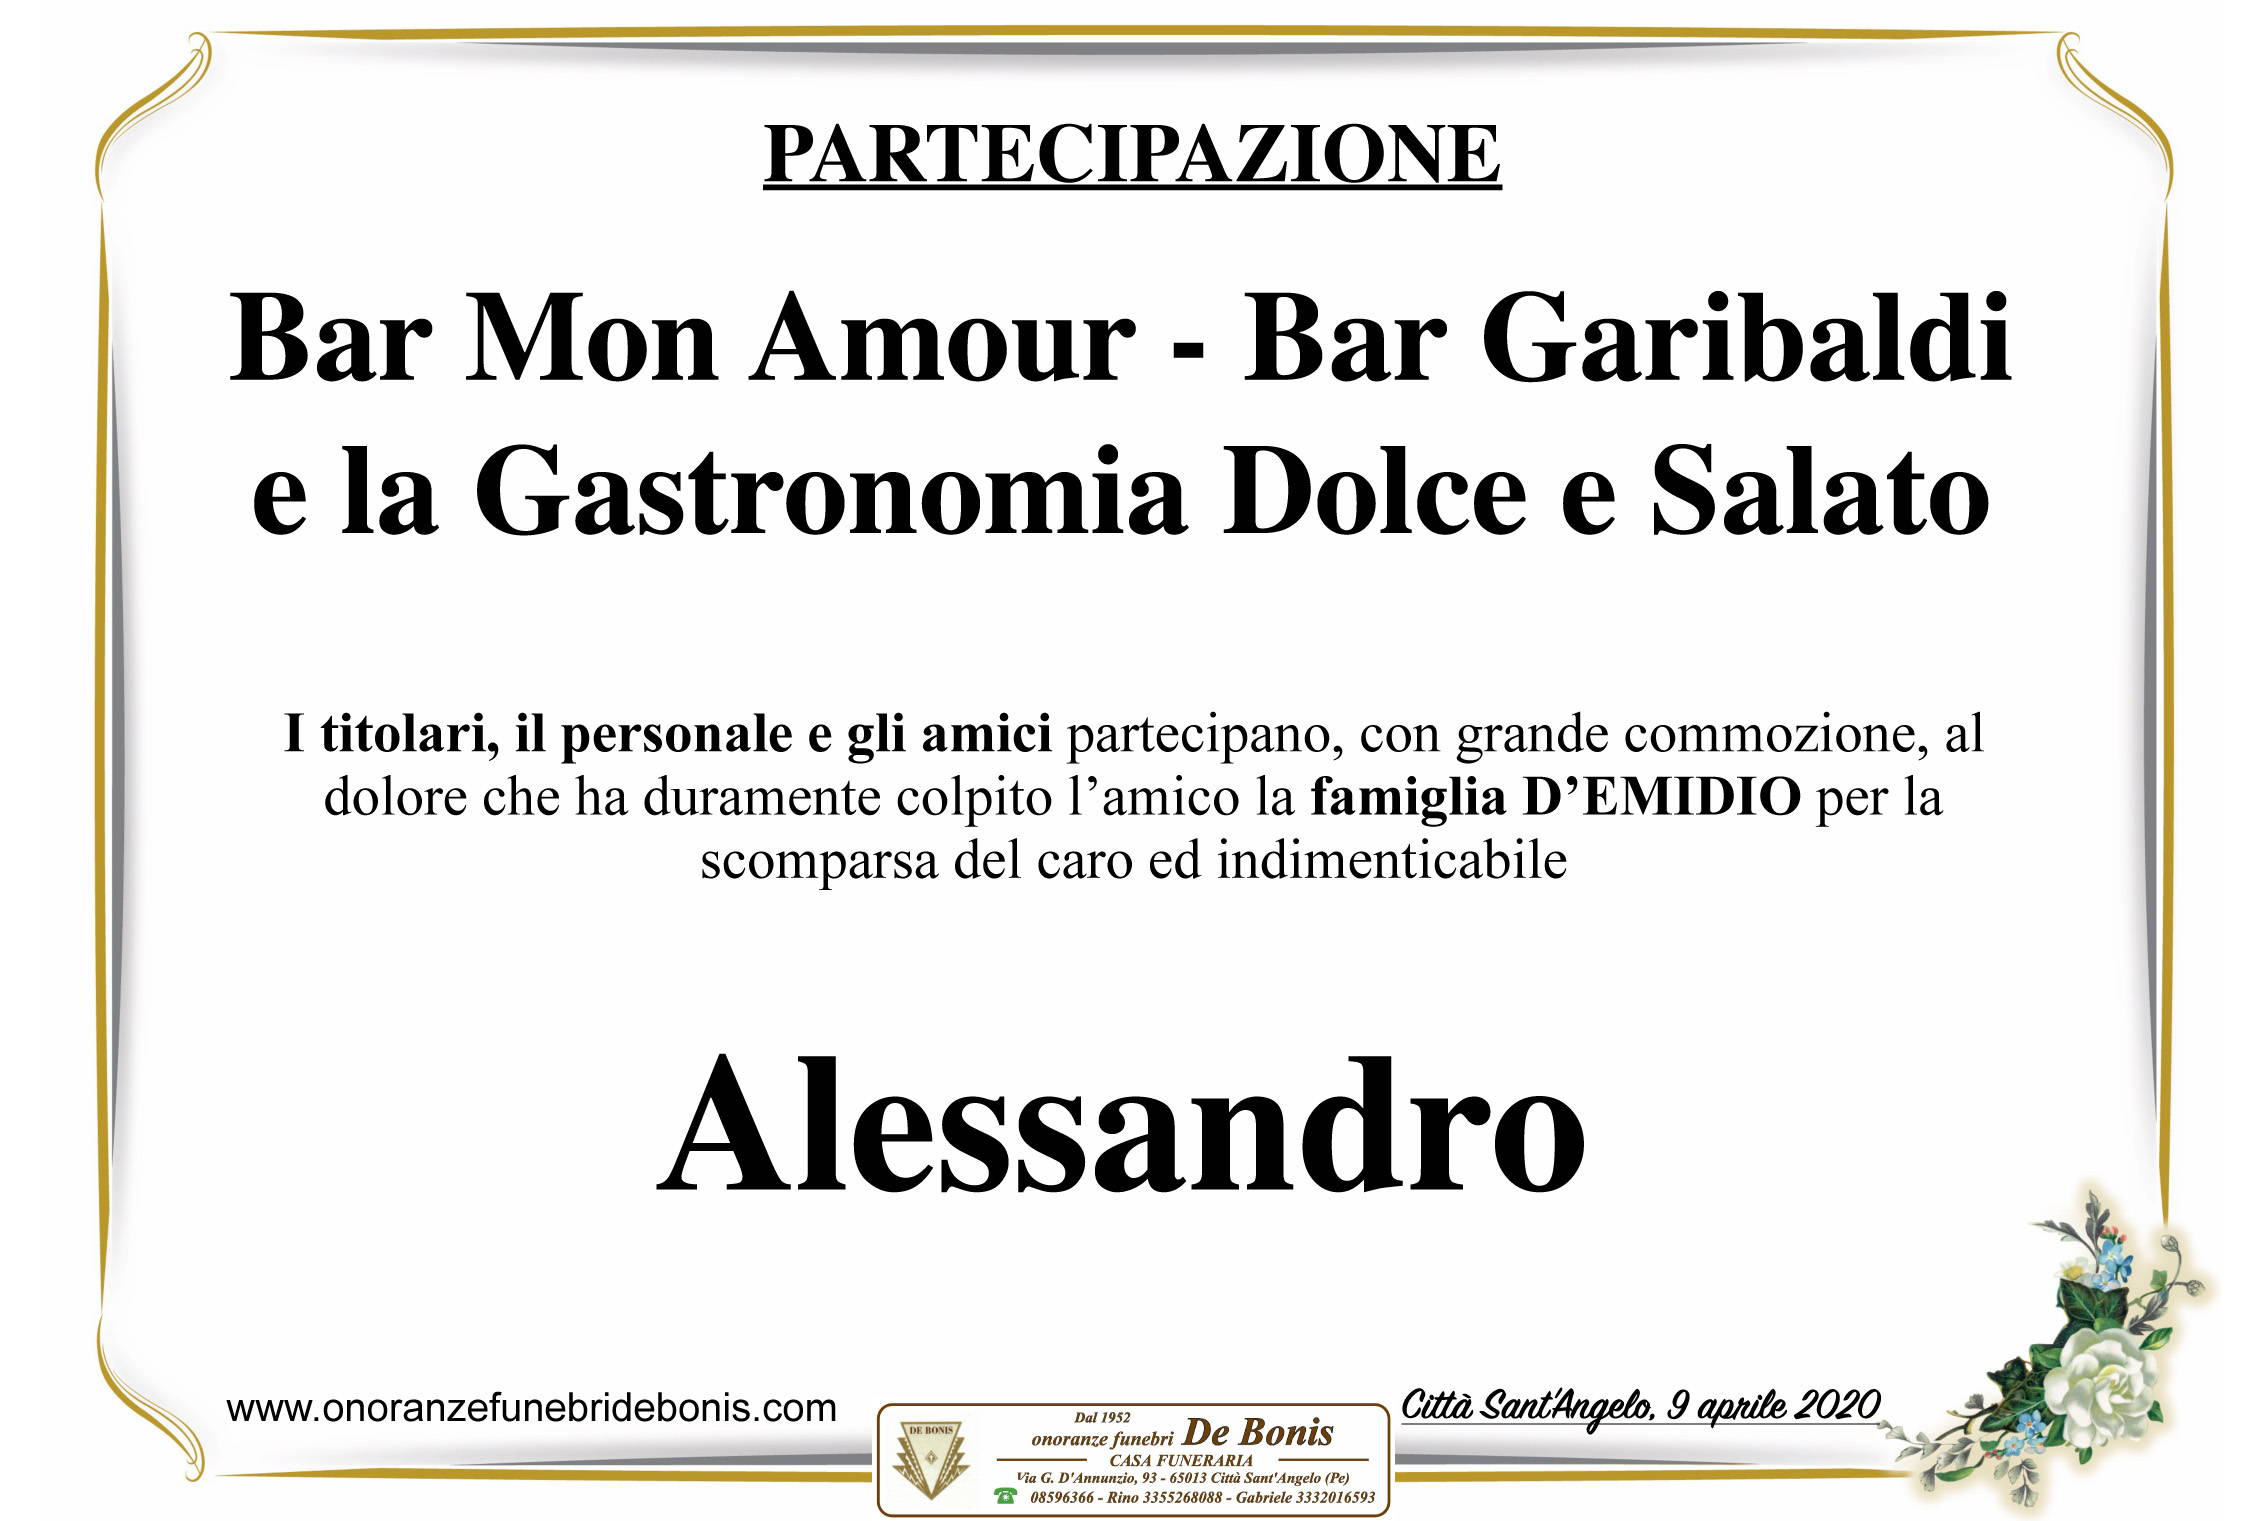 Bar Mon Amour - Bar Garibaldi - Gastronomia Dolce e Salato